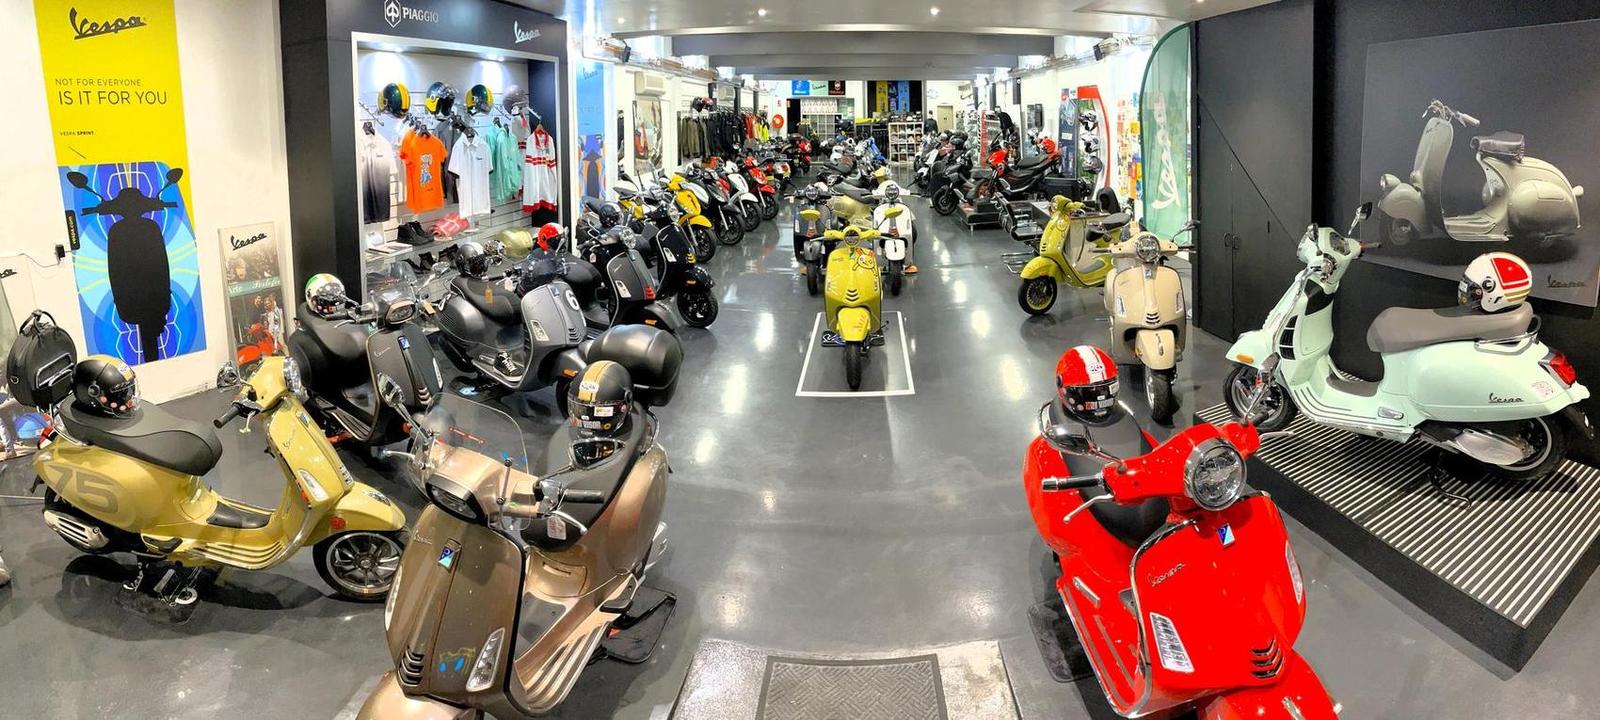 Sydney's Best & Largest Scooter Shop - Vespa - Piaggio - Aprilia - Sym